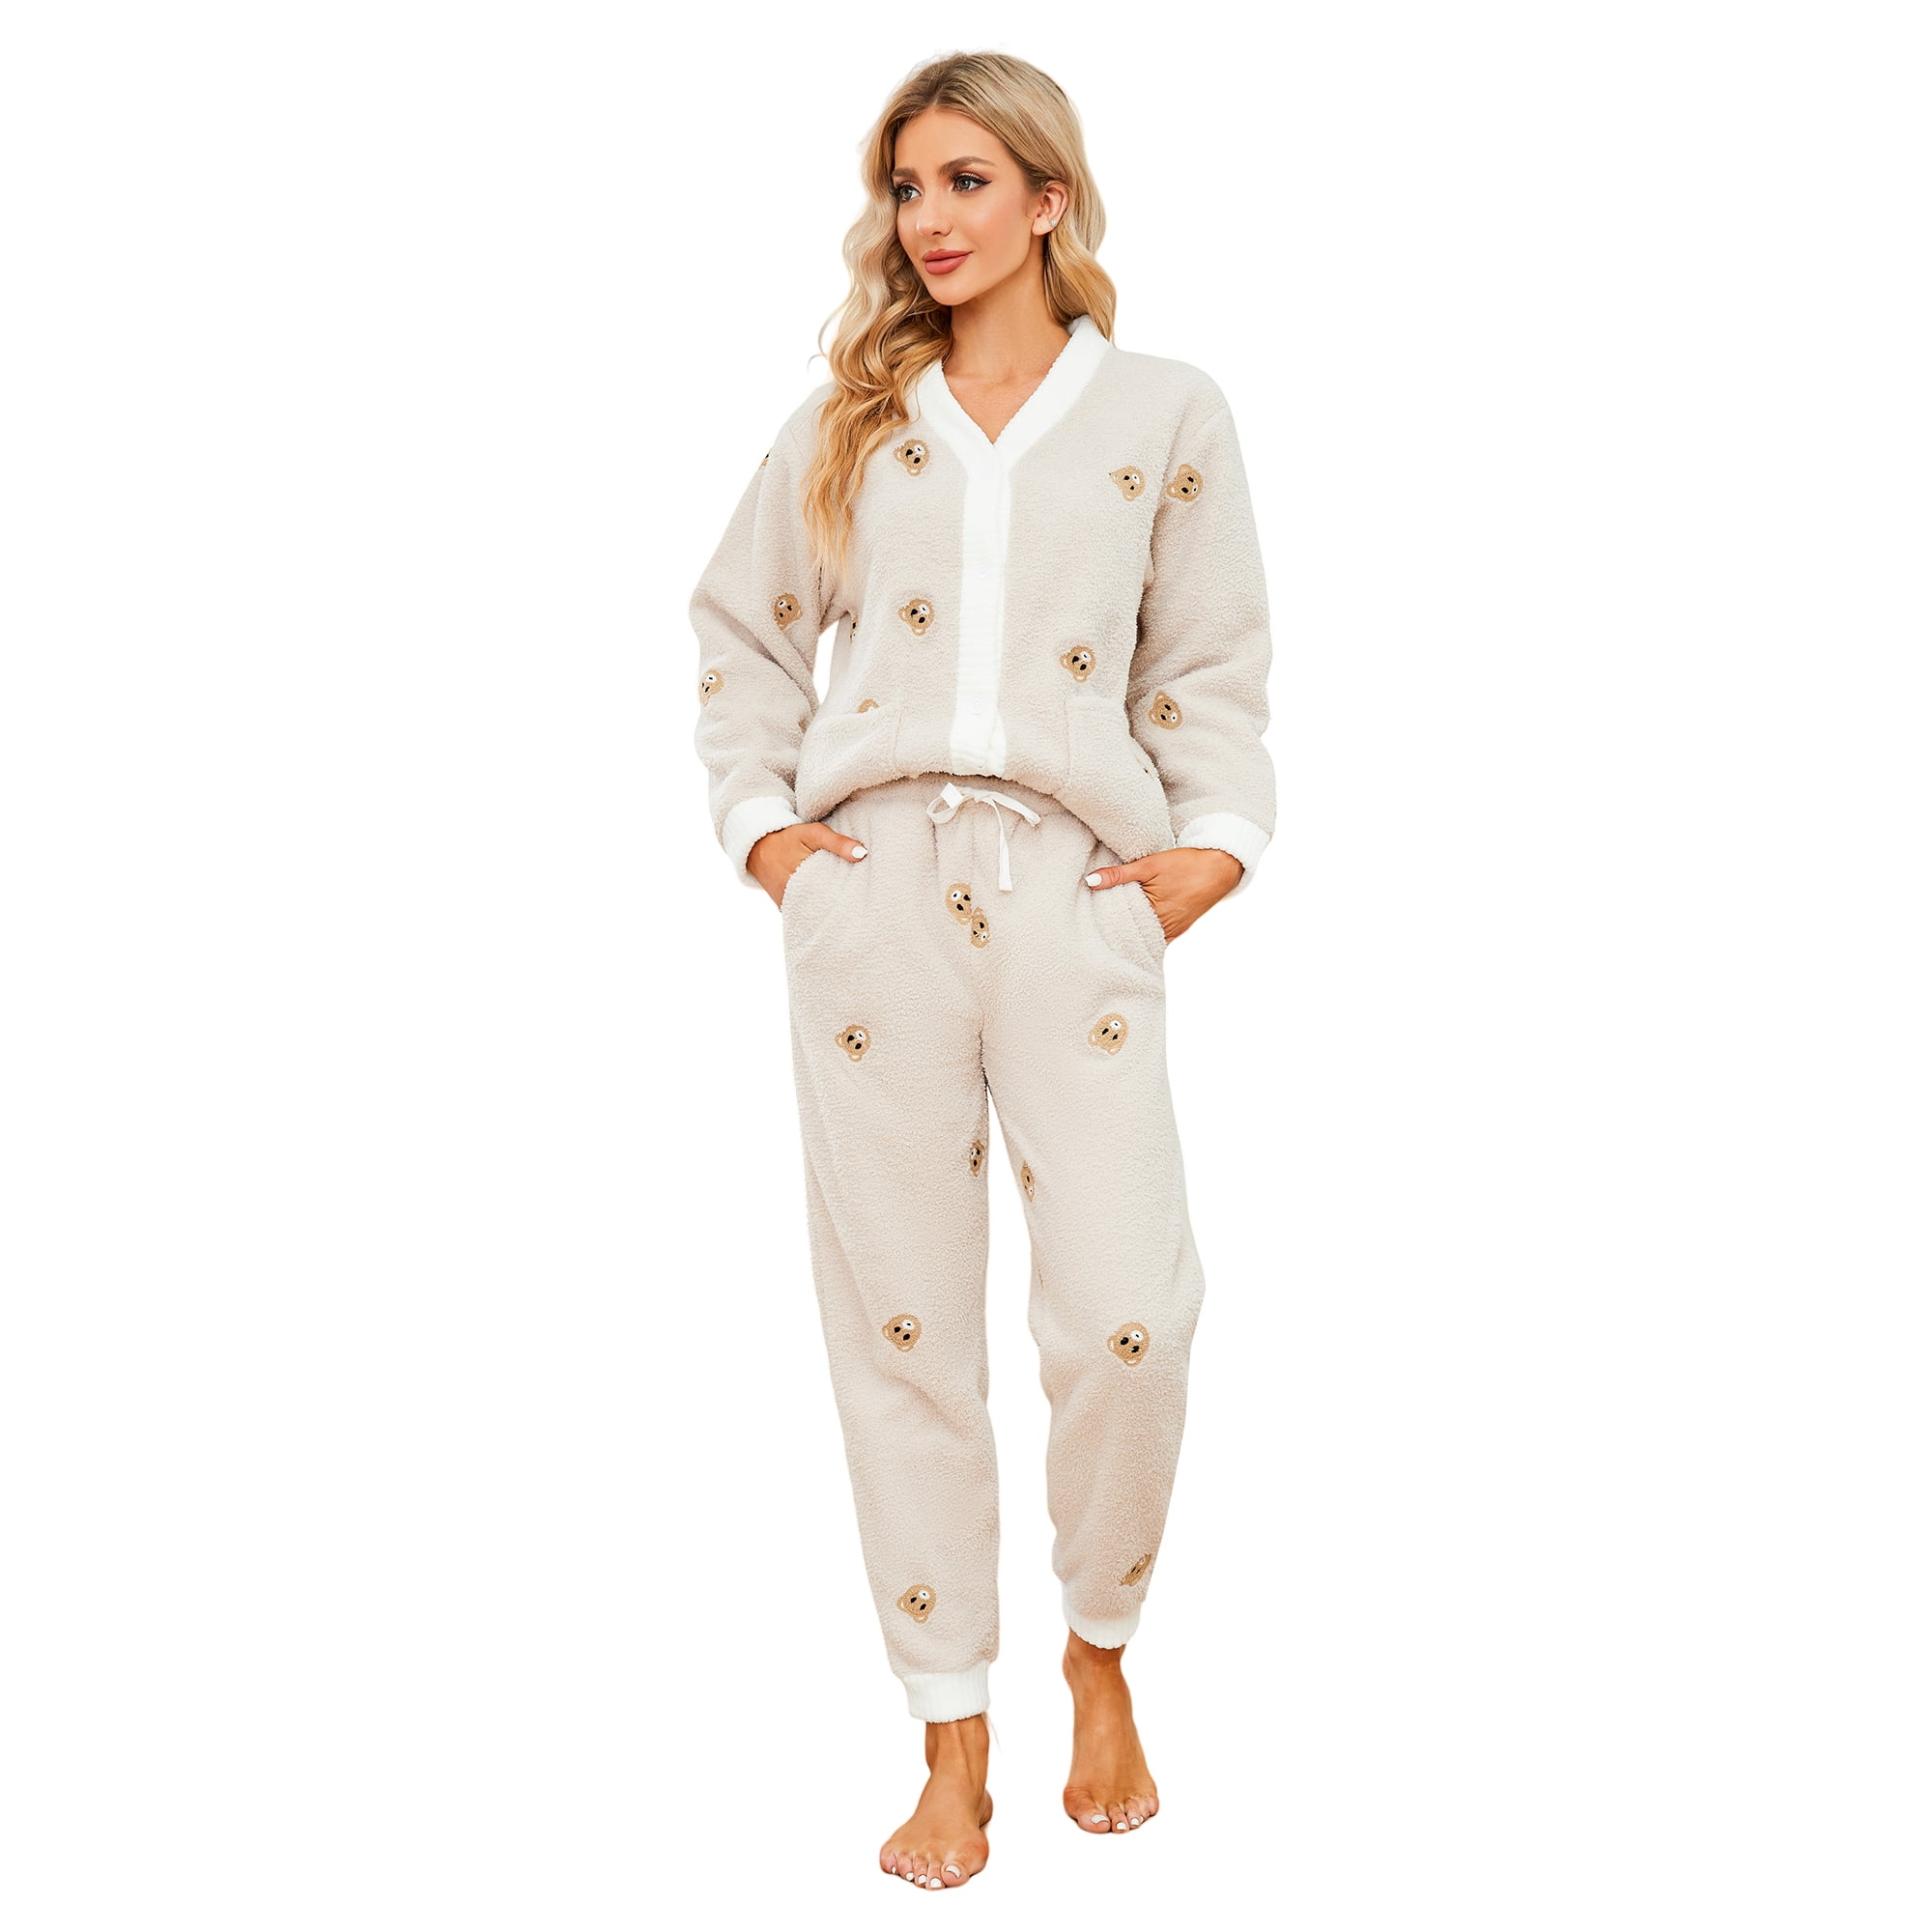 LYCY Womens Fuzzy Plush Pajama Set, Soft Warm Fleece Pajama for Women ...